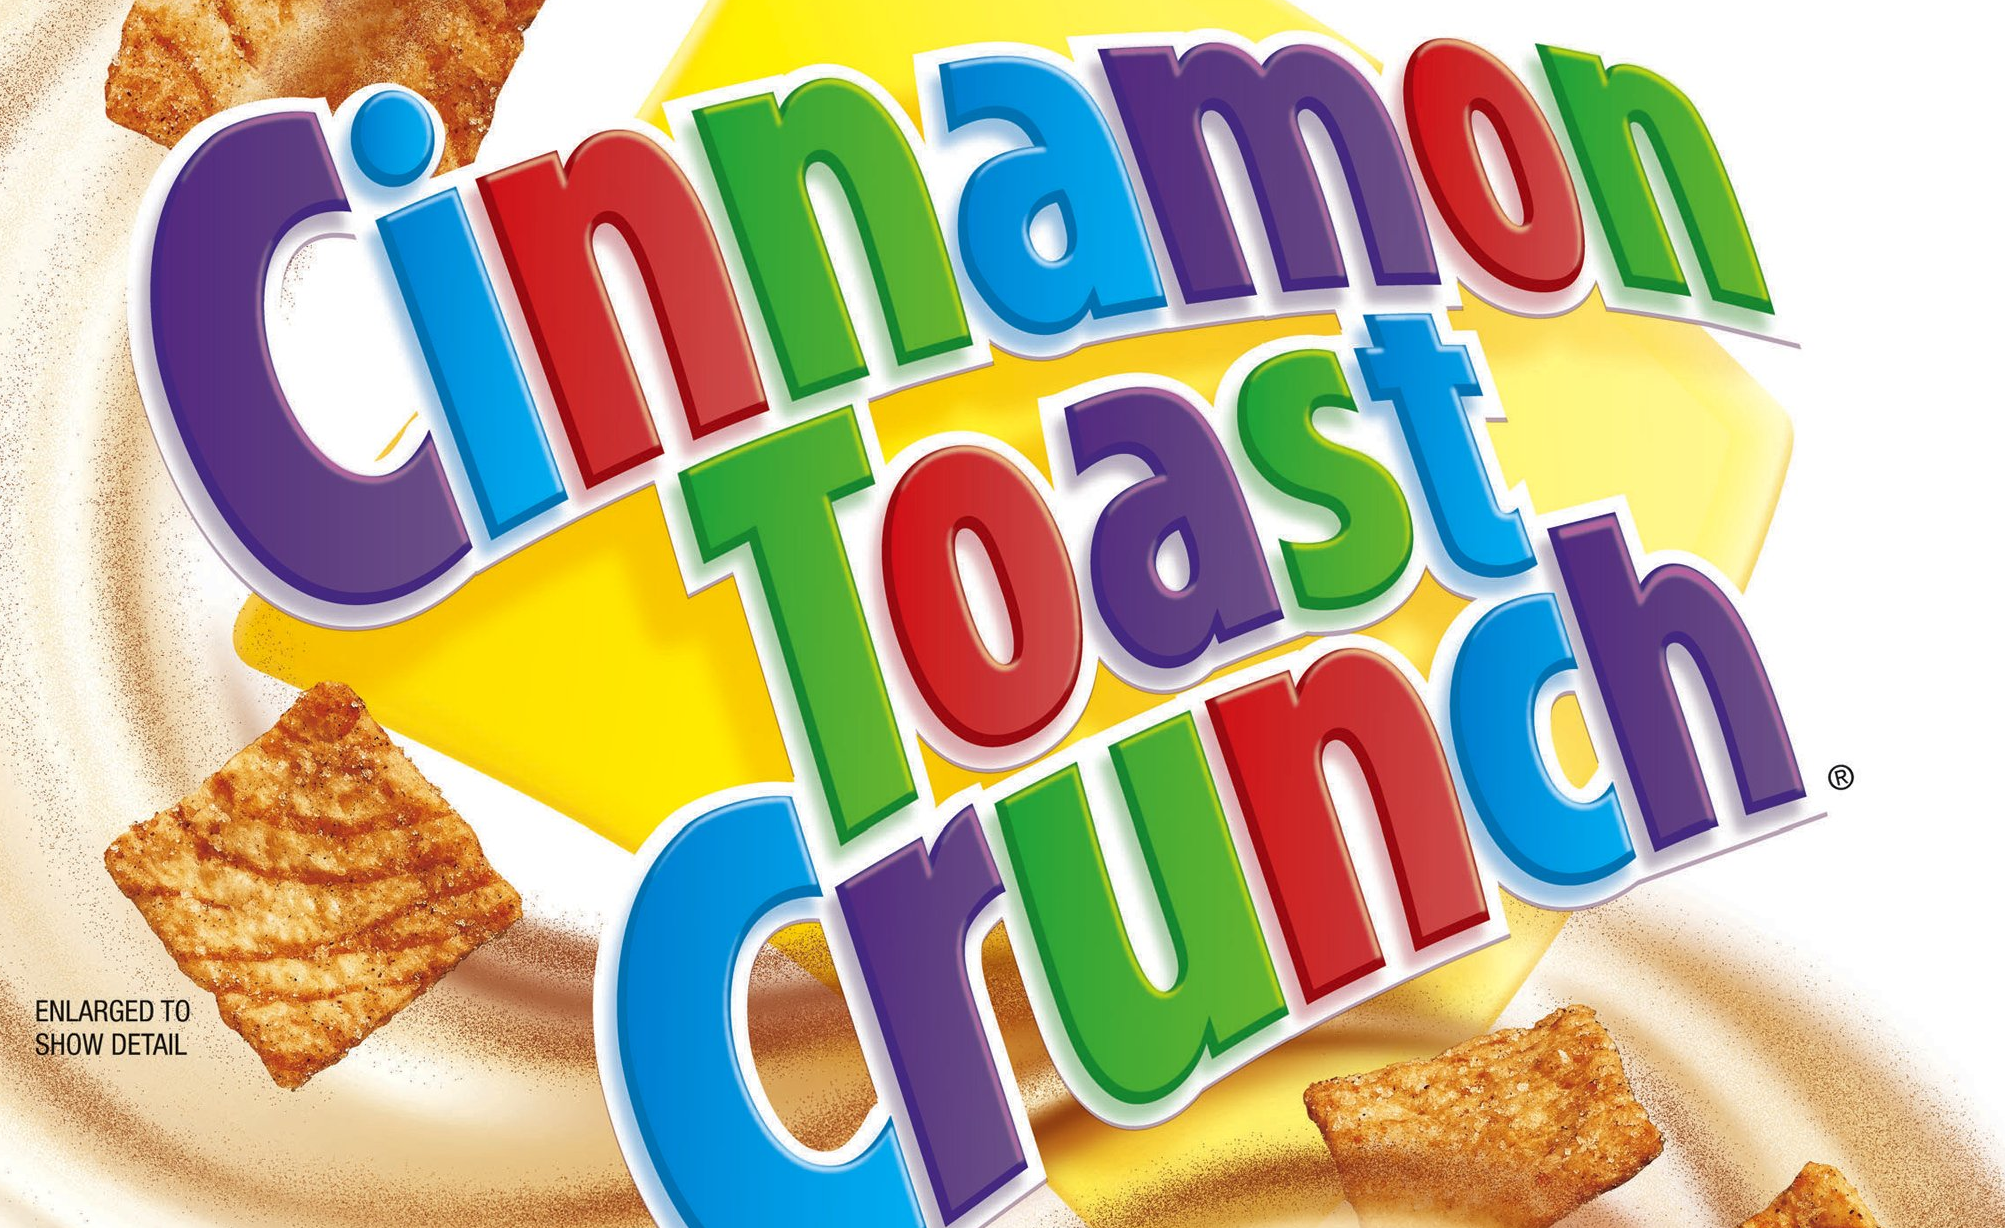 cinnamon toast cereal logo